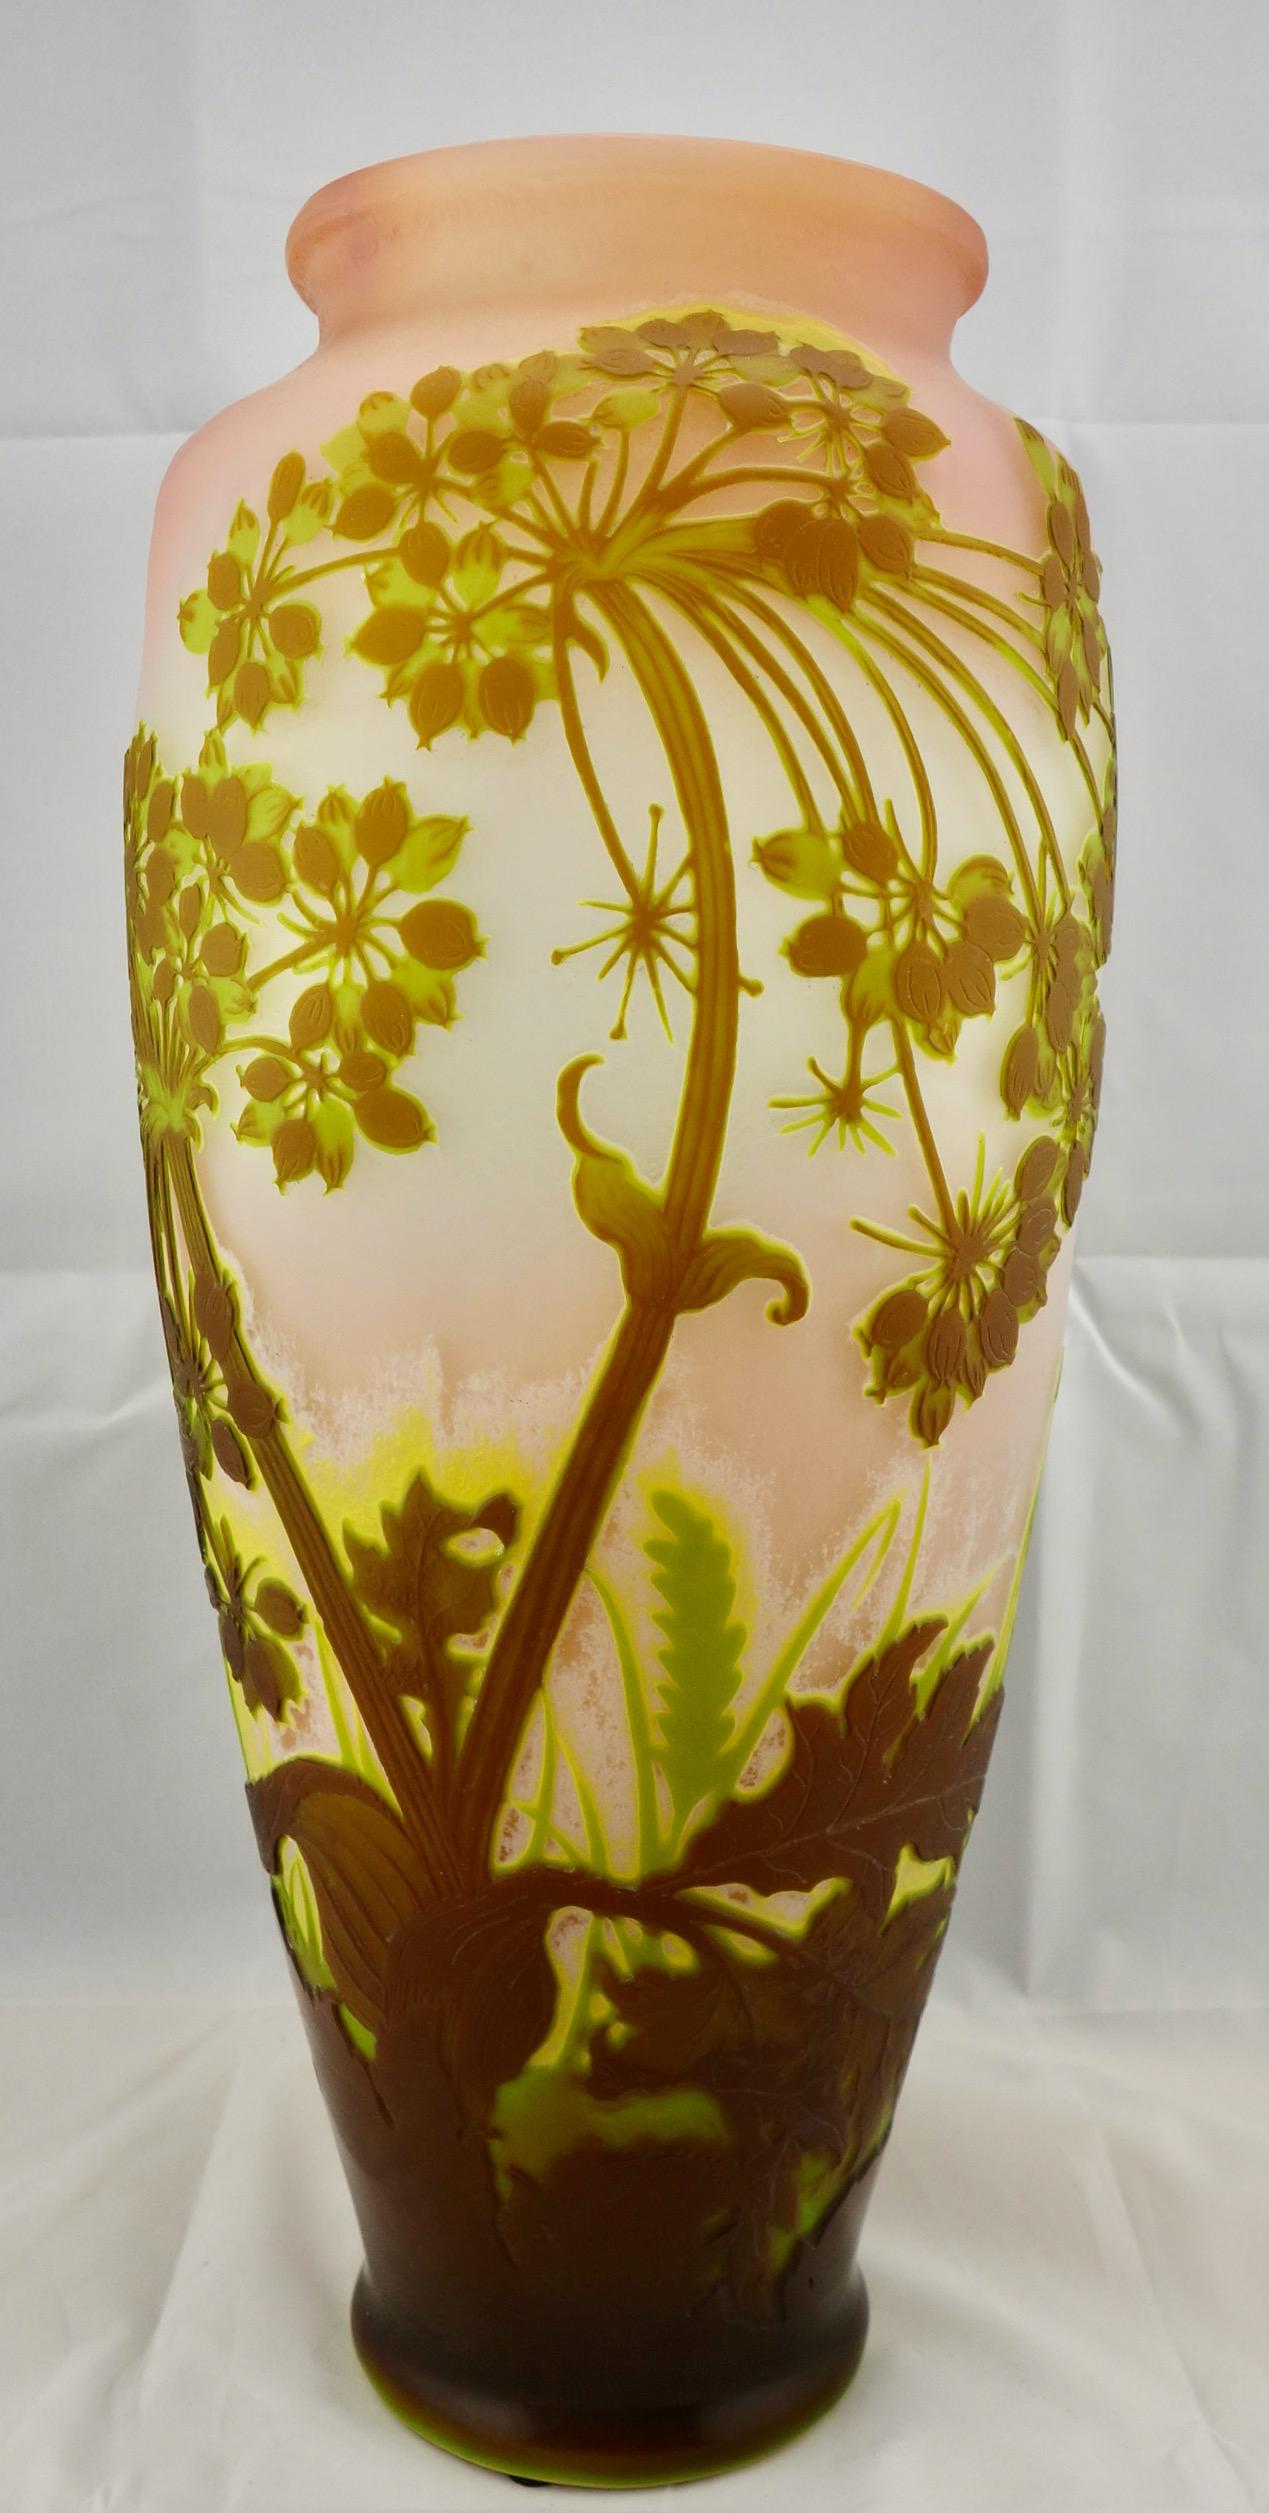 Allium-Vase aus Kamee-Glas von Galle, etwa Anfang 1900. Das Kameenglas ist in mindestens drei Farben über dem hellen Hintergrund vorhanden. Die Vase signiert in Kamee, und wurde in den 1900er Jahren gemacht. Sie ist 18 1/4